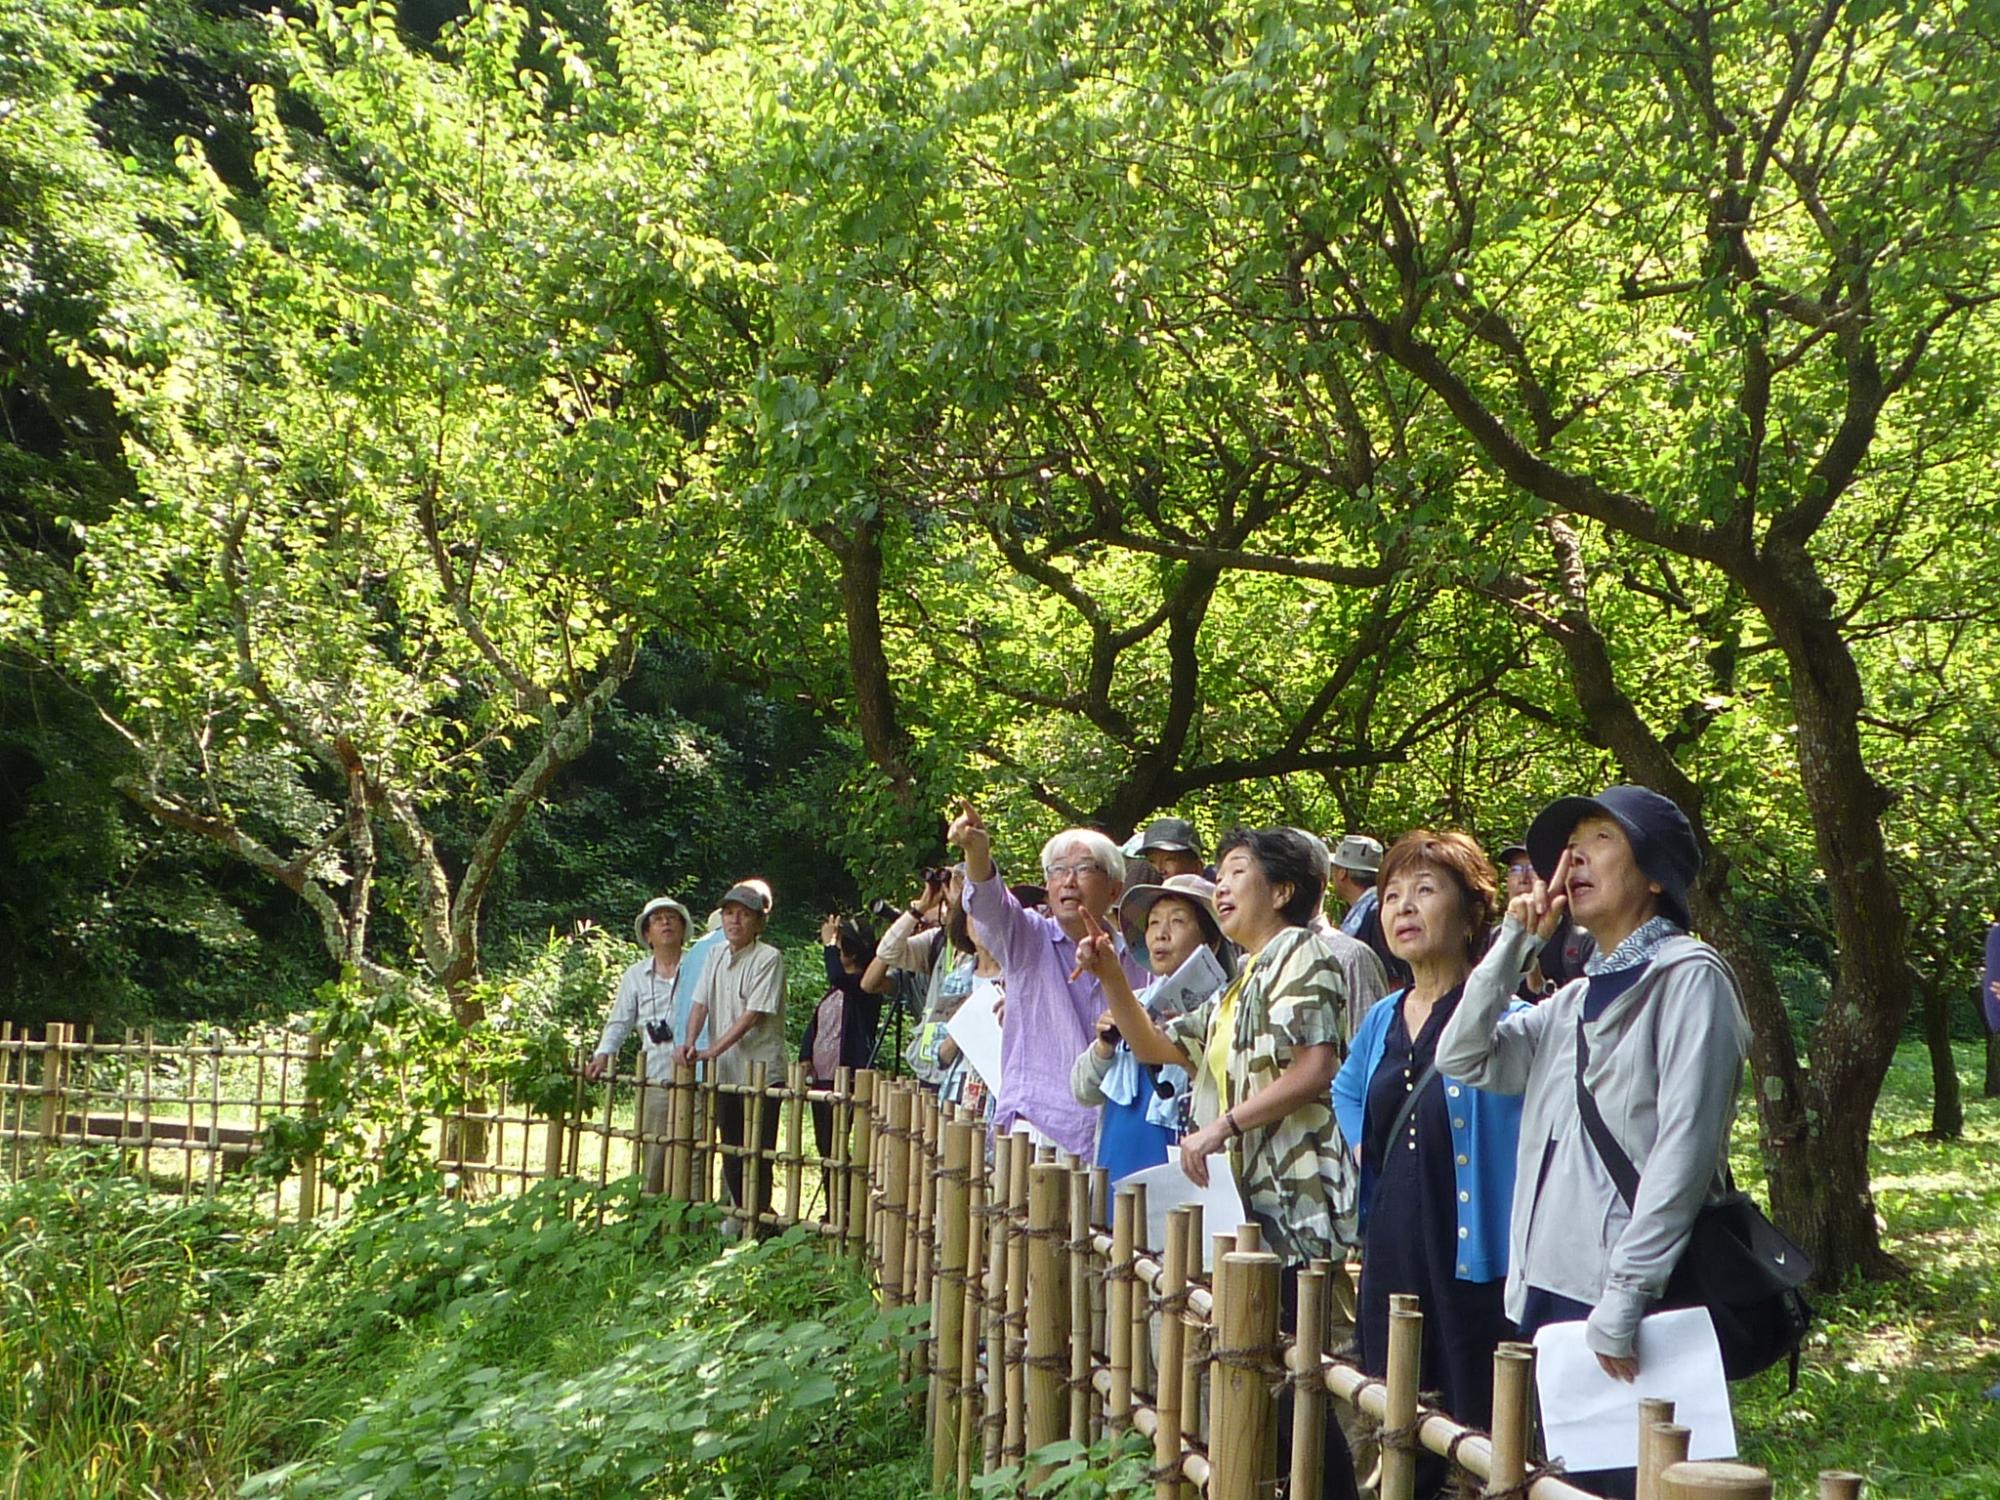 木々に囲まれた柵の前に参加者の皆さんが集まり、空を見上げている市内散策の様子の写真